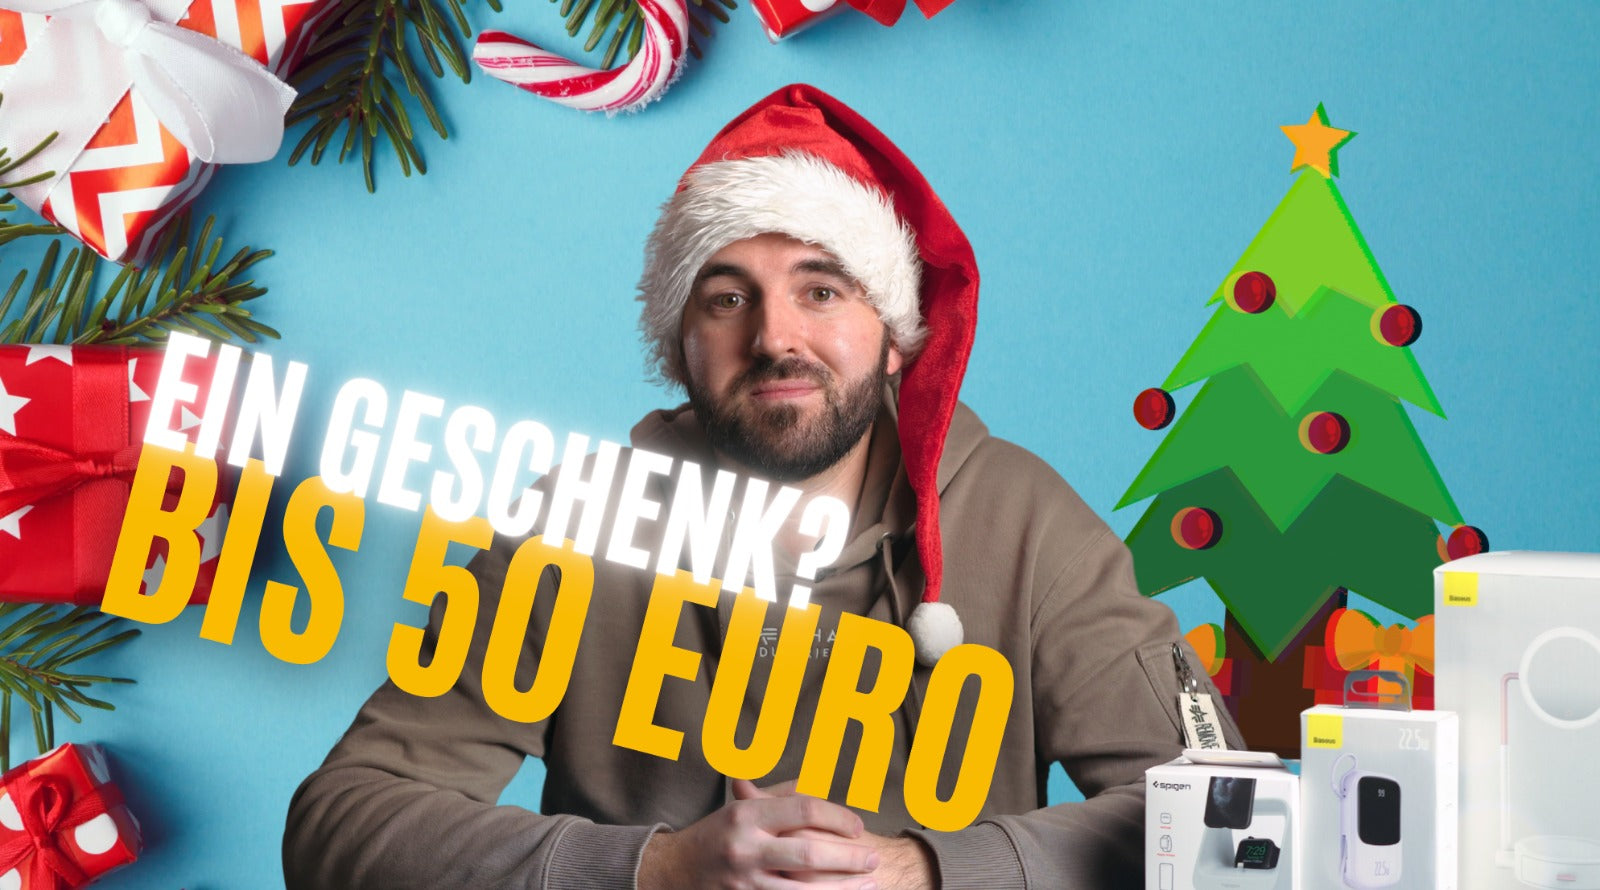 WELCHES GESCHENK ZU WEIHNACHTEN BIS 50 EURO ?